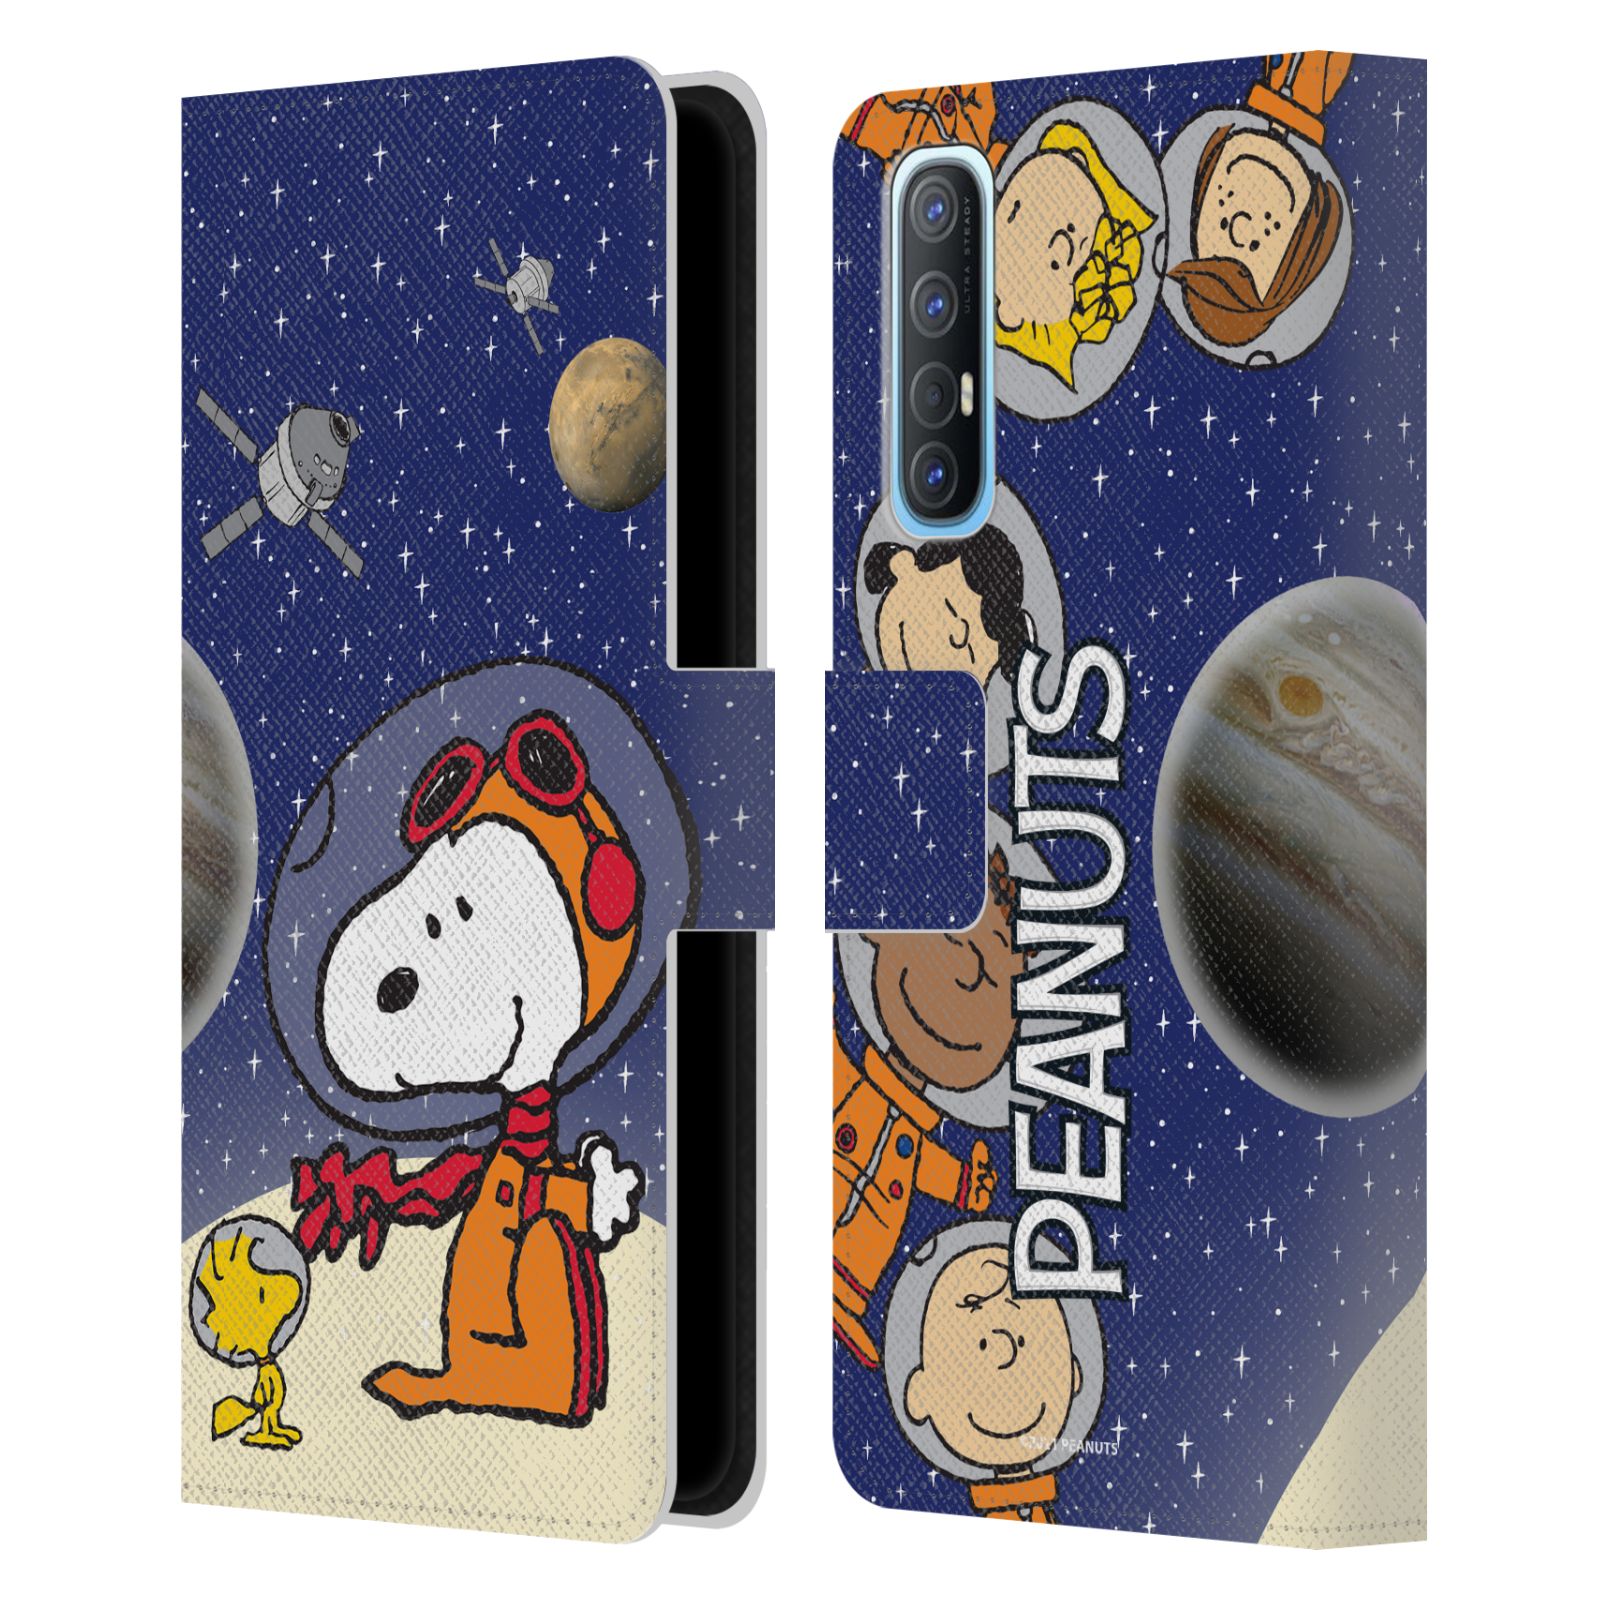 Pouzdro na mobil Oppo Find X2 NEO - HEAD CASE - Peanuts Snoopy ve vesmíru 2